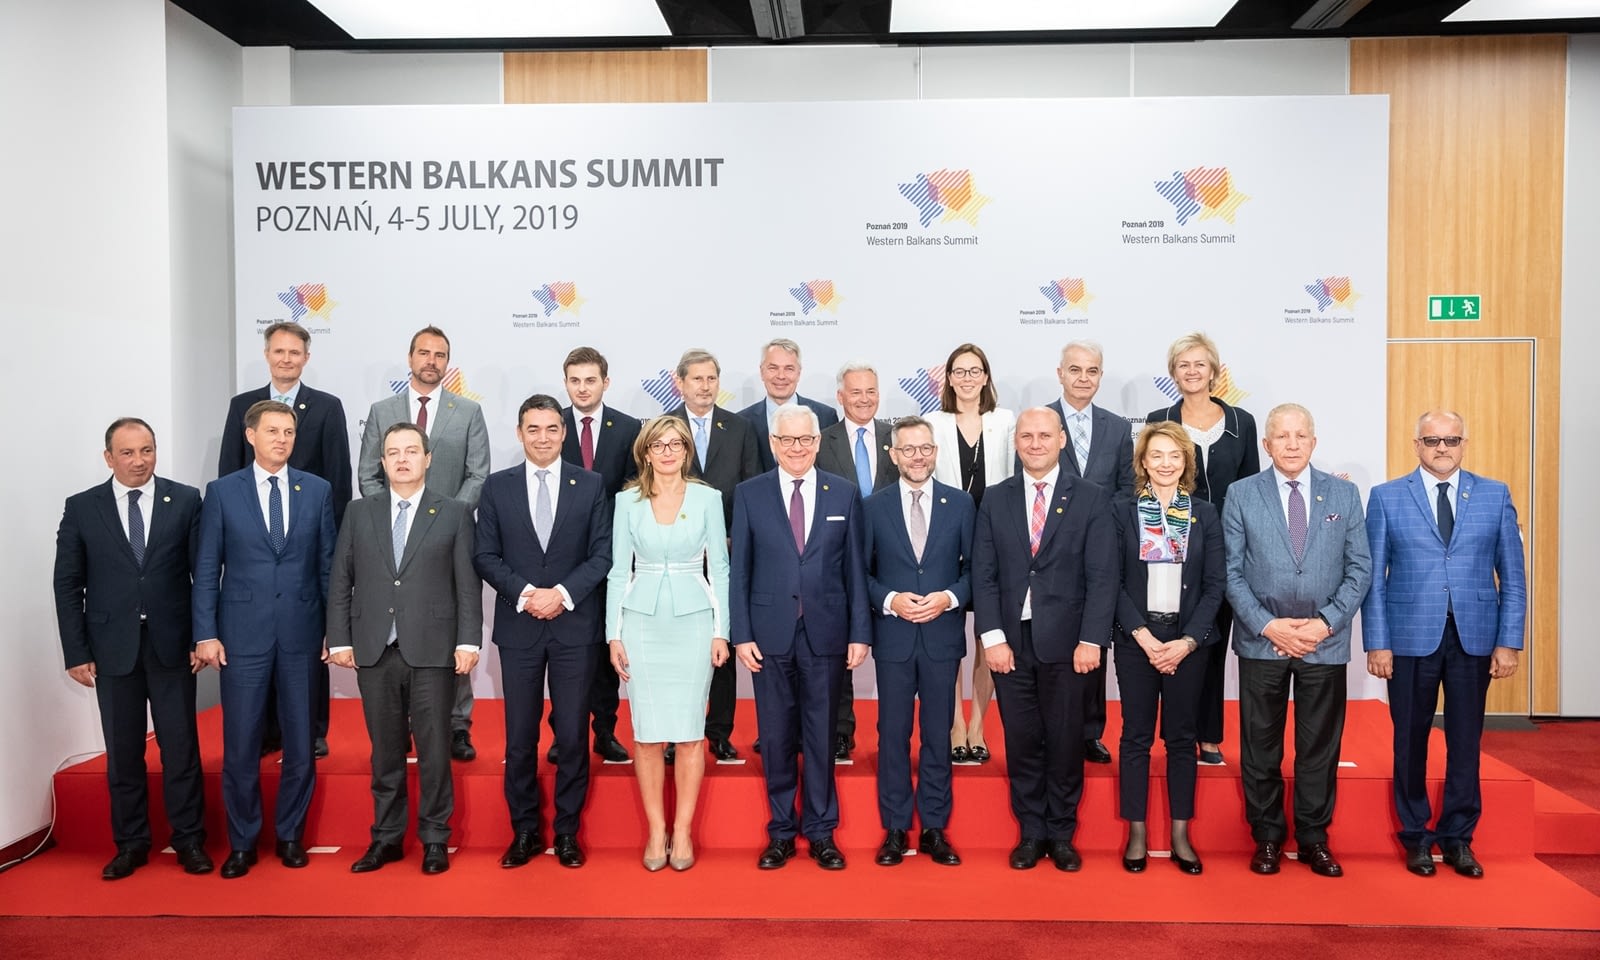 Szczyt Bałkanów Zachodnich 2019 Brill AV Media